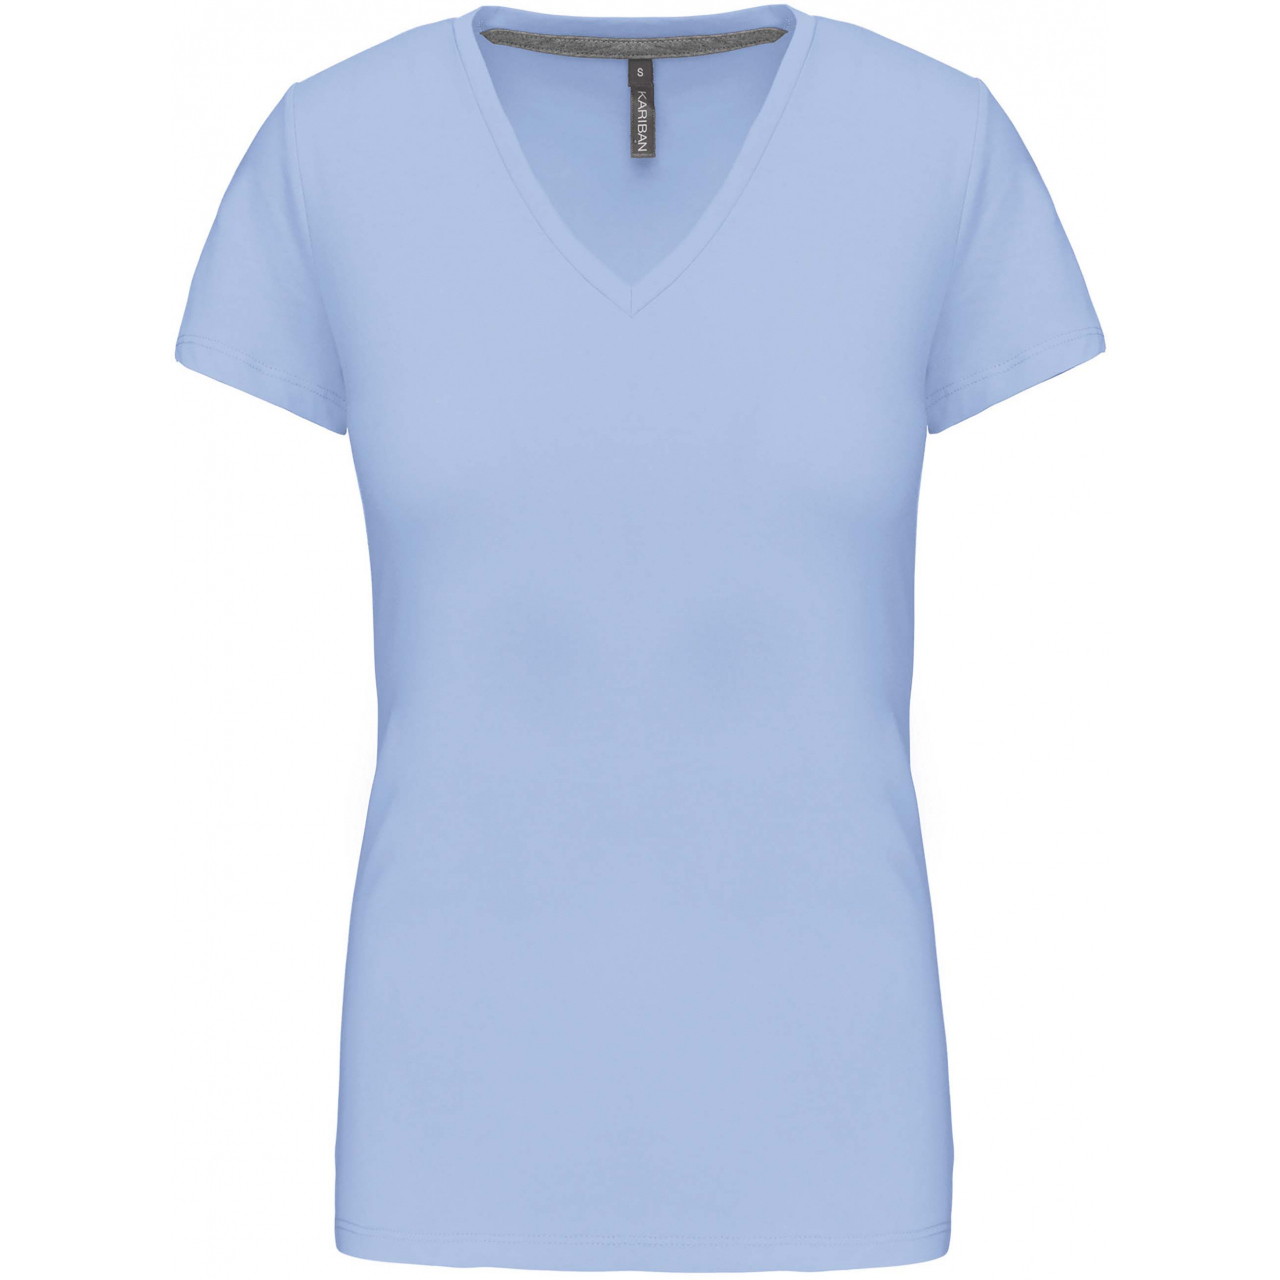 Dámské tričko Kariban V-neck s krátkým rukávem - světle modré, L